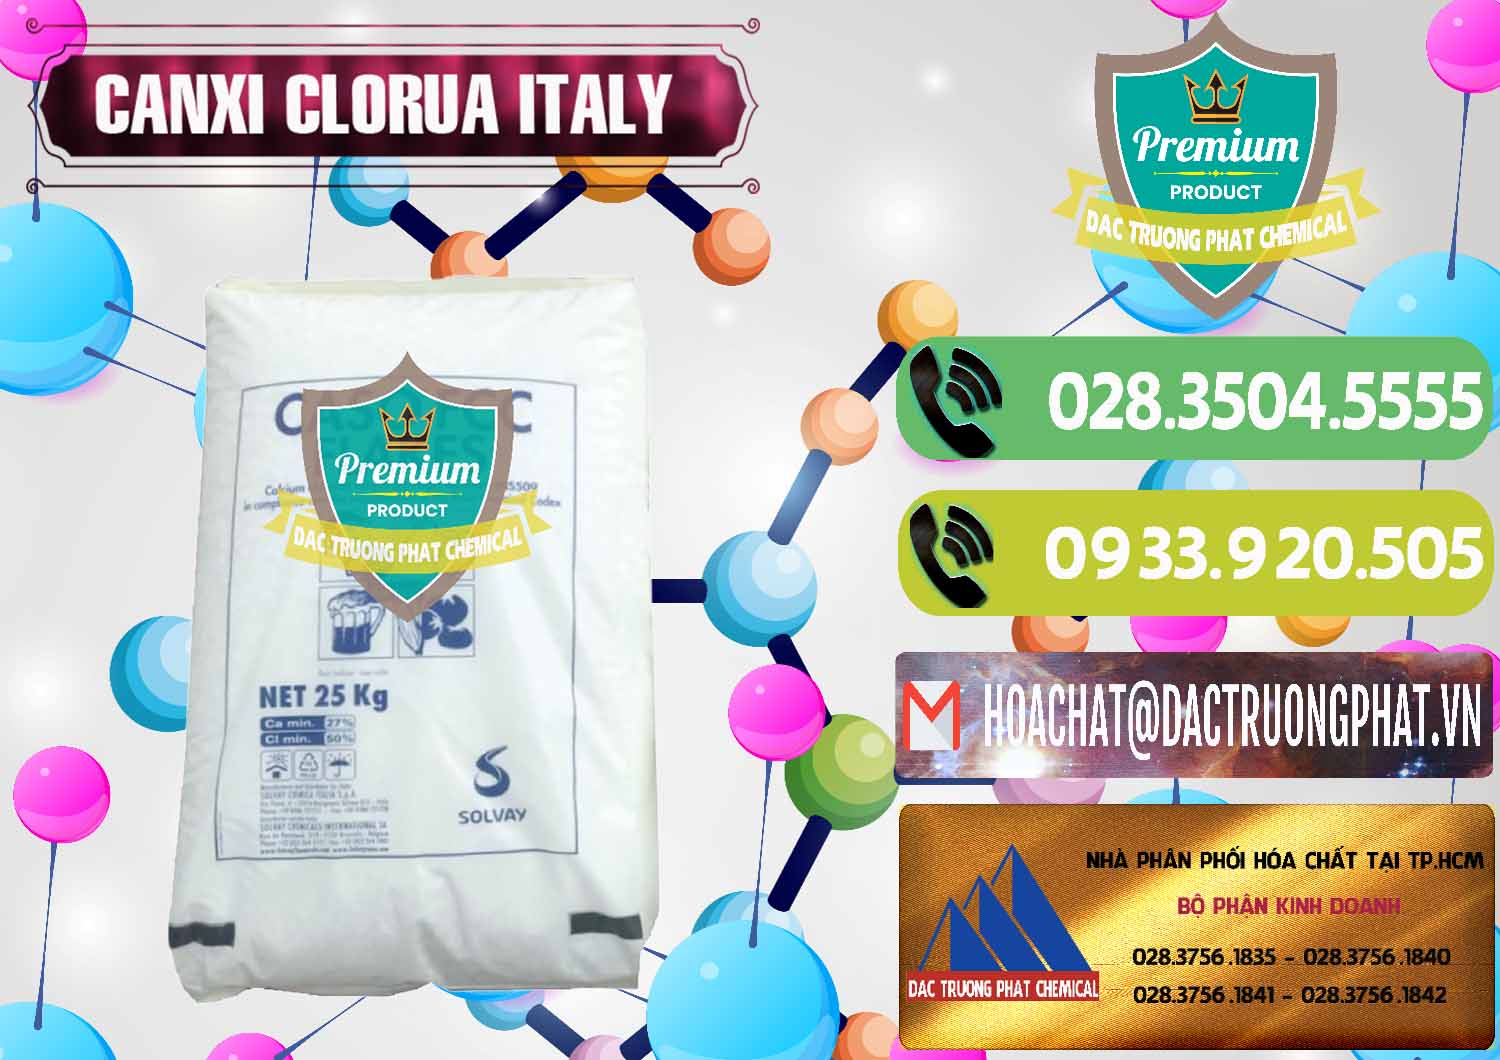 Cty kinh doanh & bán CaCl2 – Canxi Clorua Food Grade Ý Italy - 0435 - Công ty nhập khẩu và cung cấp hóa chất tại TP.HCM - hoachatmientay.vn